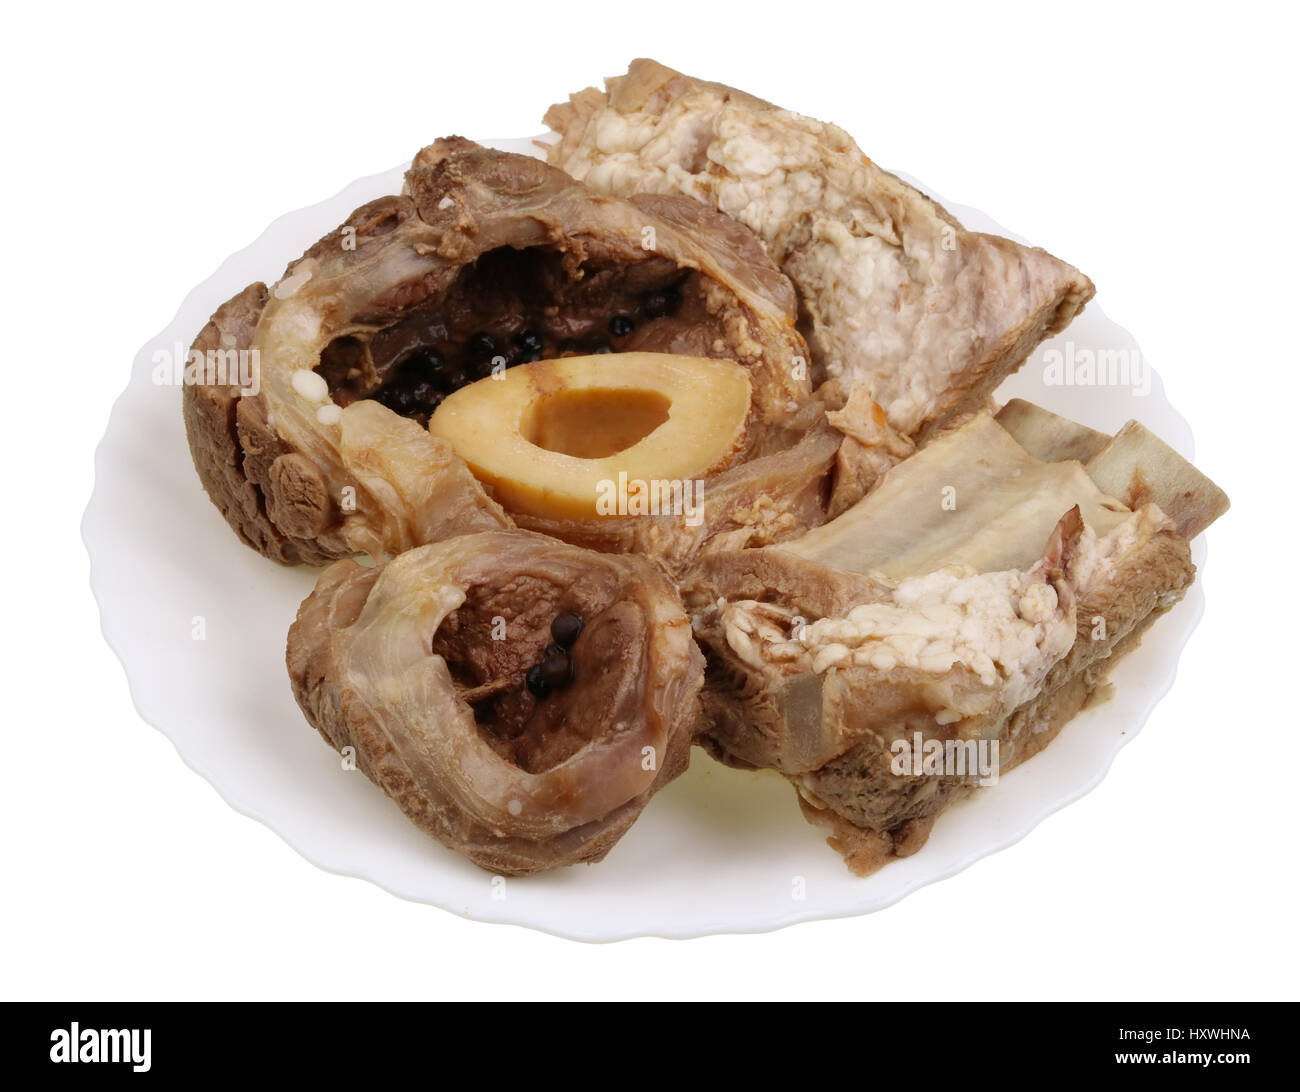 La viande de boeuf bouilli de côtes et la jambe avec un bonel, une base d'aliment diététique pour la restauration de l'hémoglobine. Isolé Banque D'Images